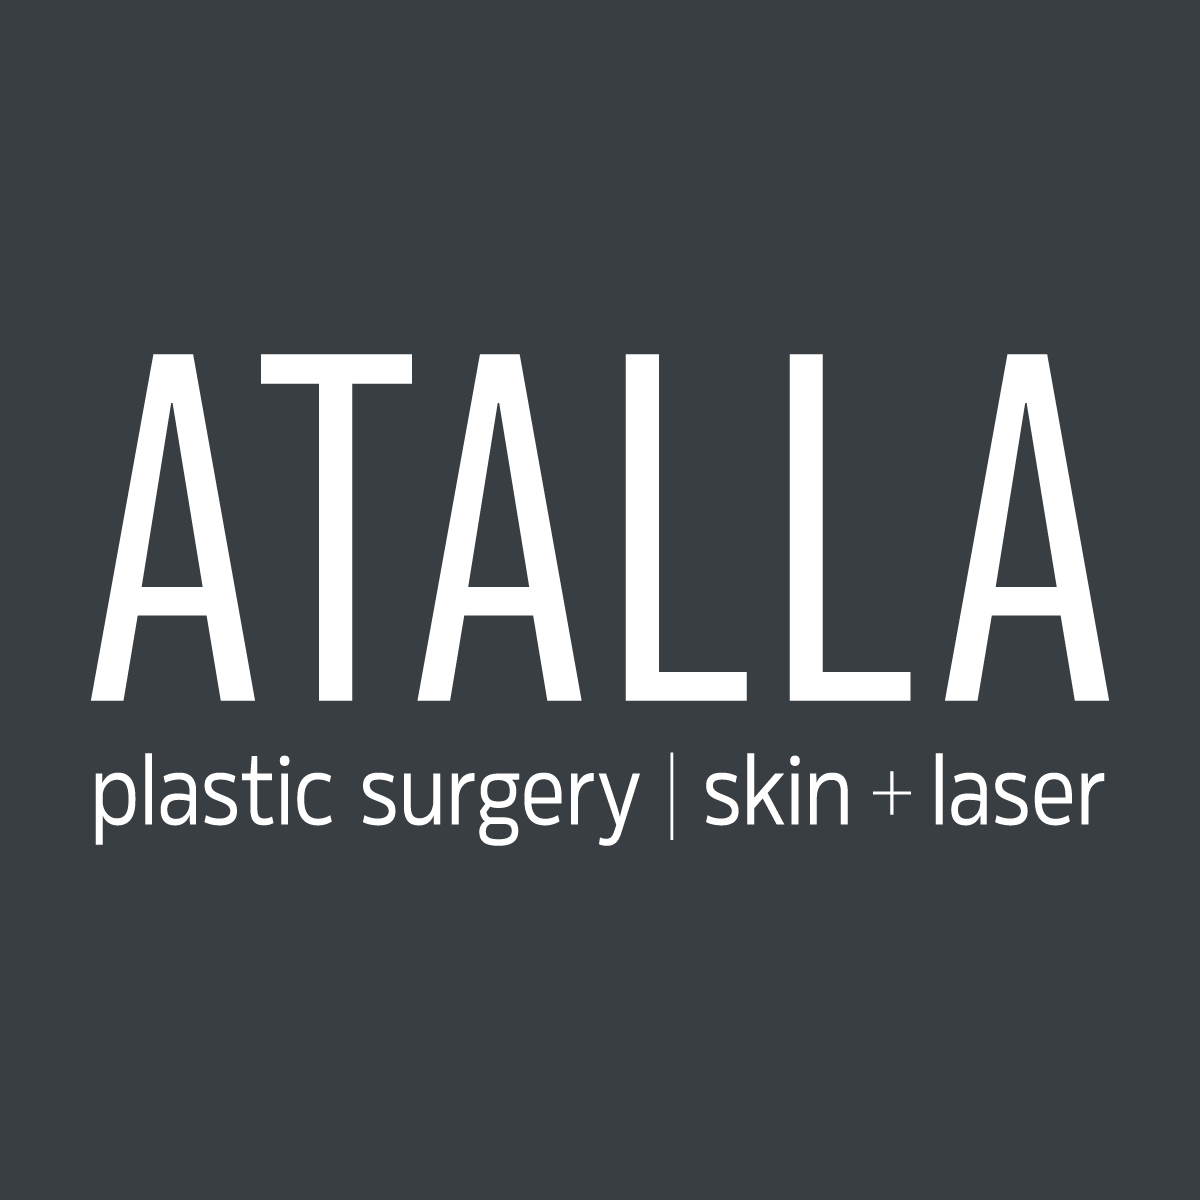 ATALLA VIP membership - ATALLA plastic surgery